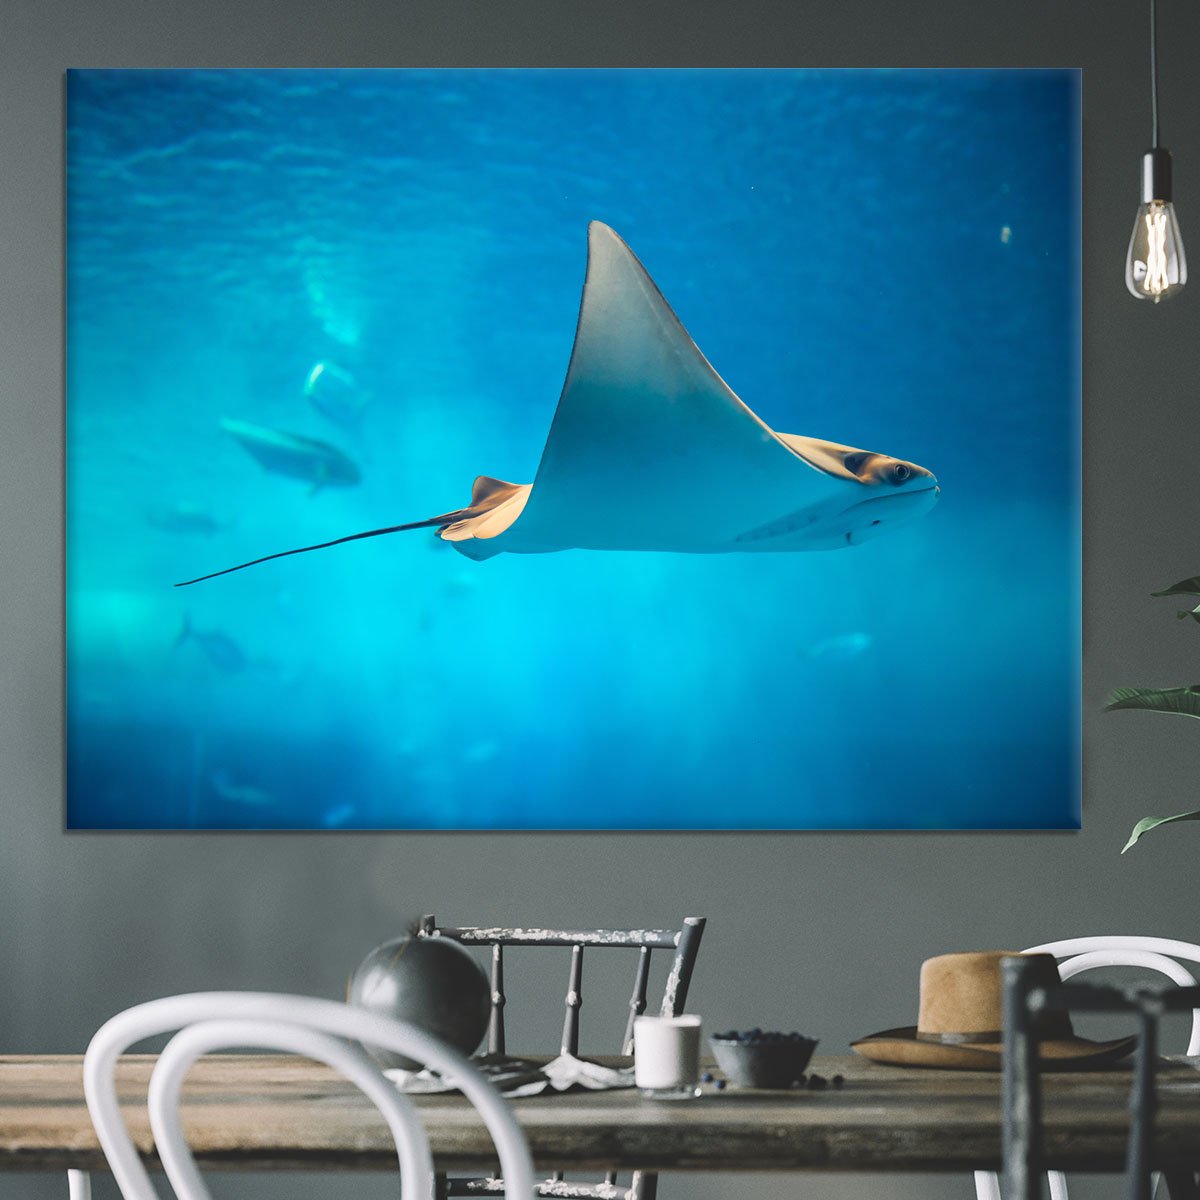 Stingray in the aquarium Canvas Print or Poster